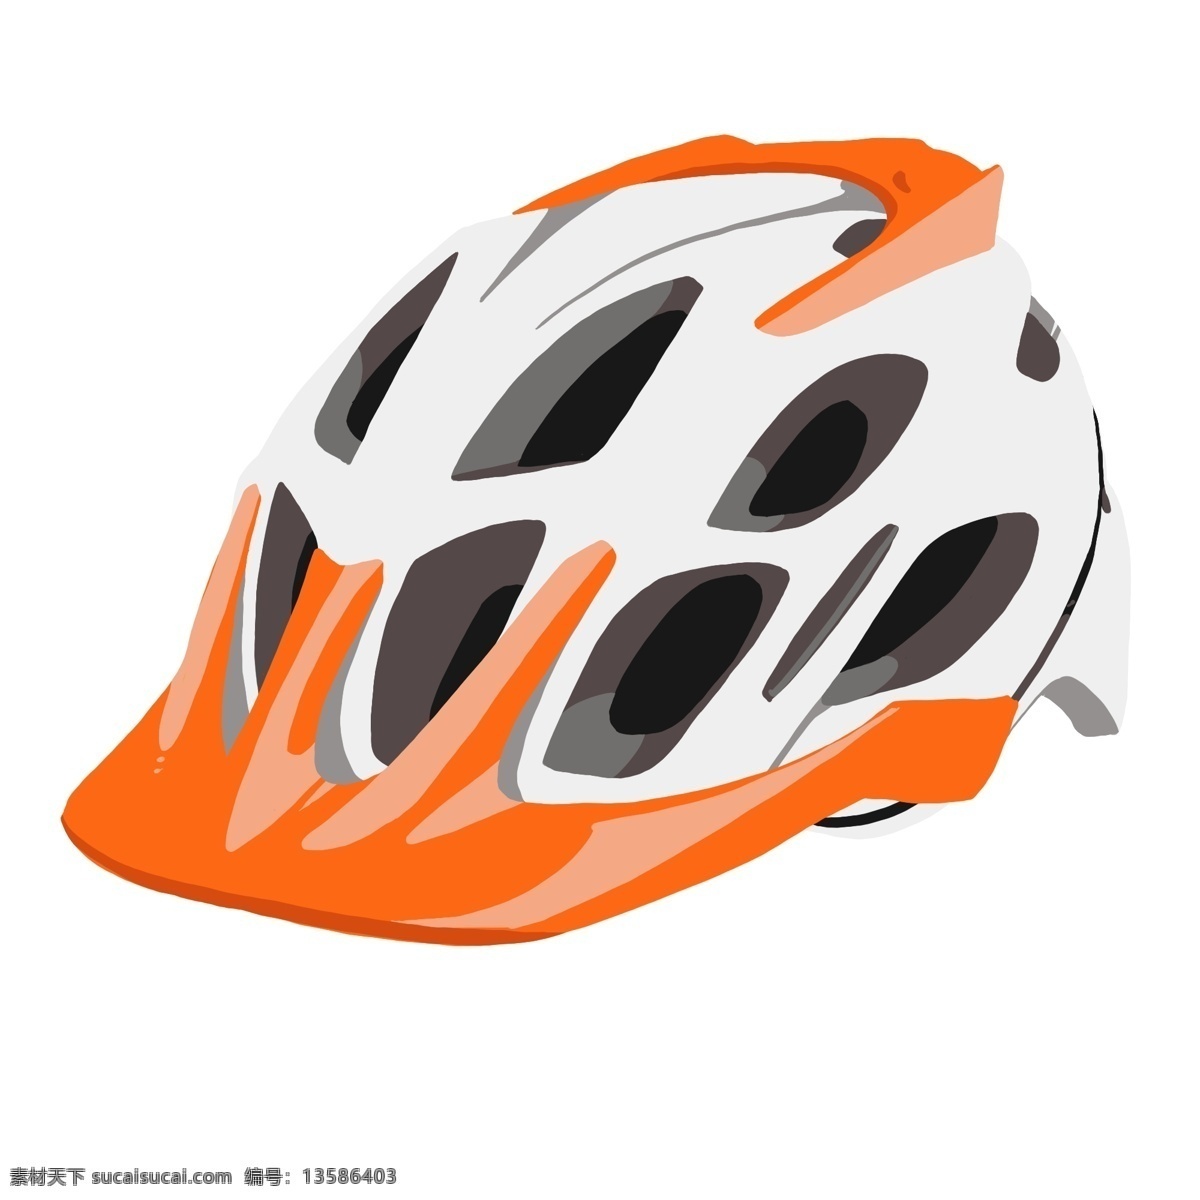 白色 立体 头盔 插图 橙色装饰 白色头盔 简约的头盔 骑行头盔 设计头盔 创意图案 装饰头盔 卡通头盔